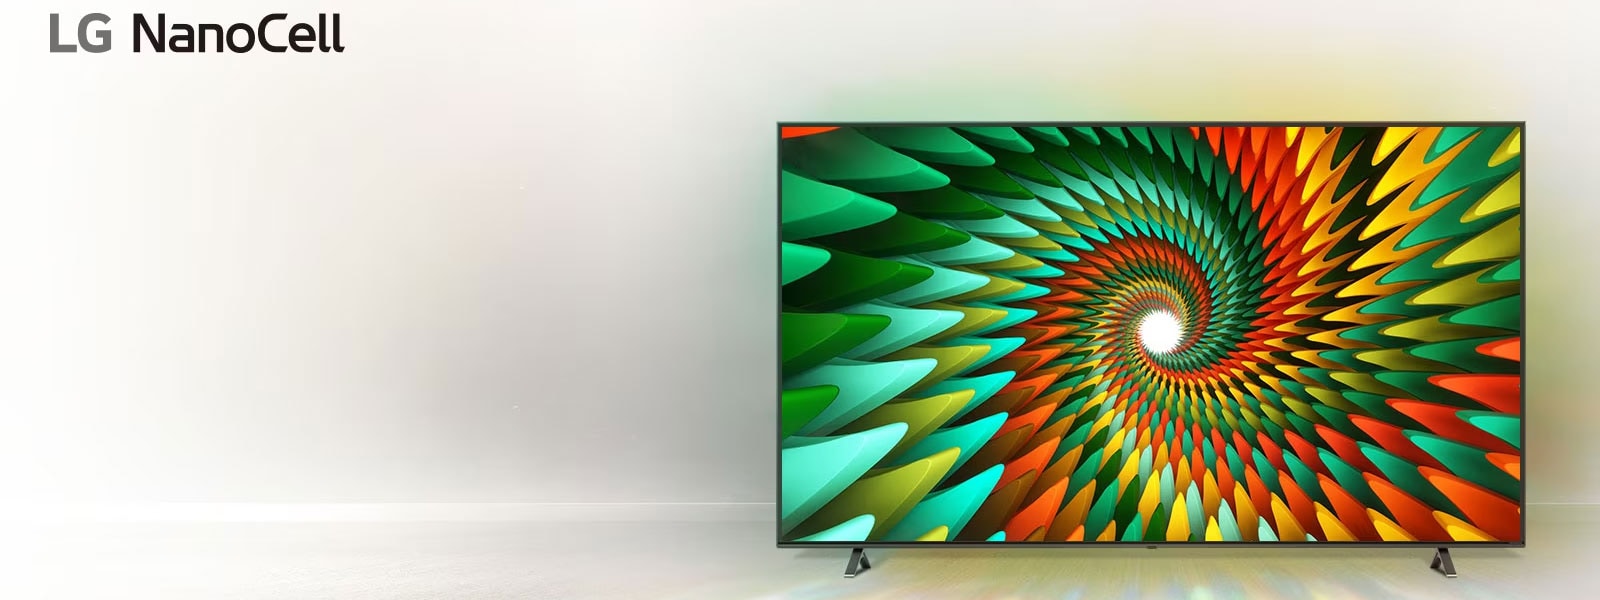 טלוויזיה ניצבת בחדר לבן וריק ובמסך מוצגת צורת ספירלה צבעונית.